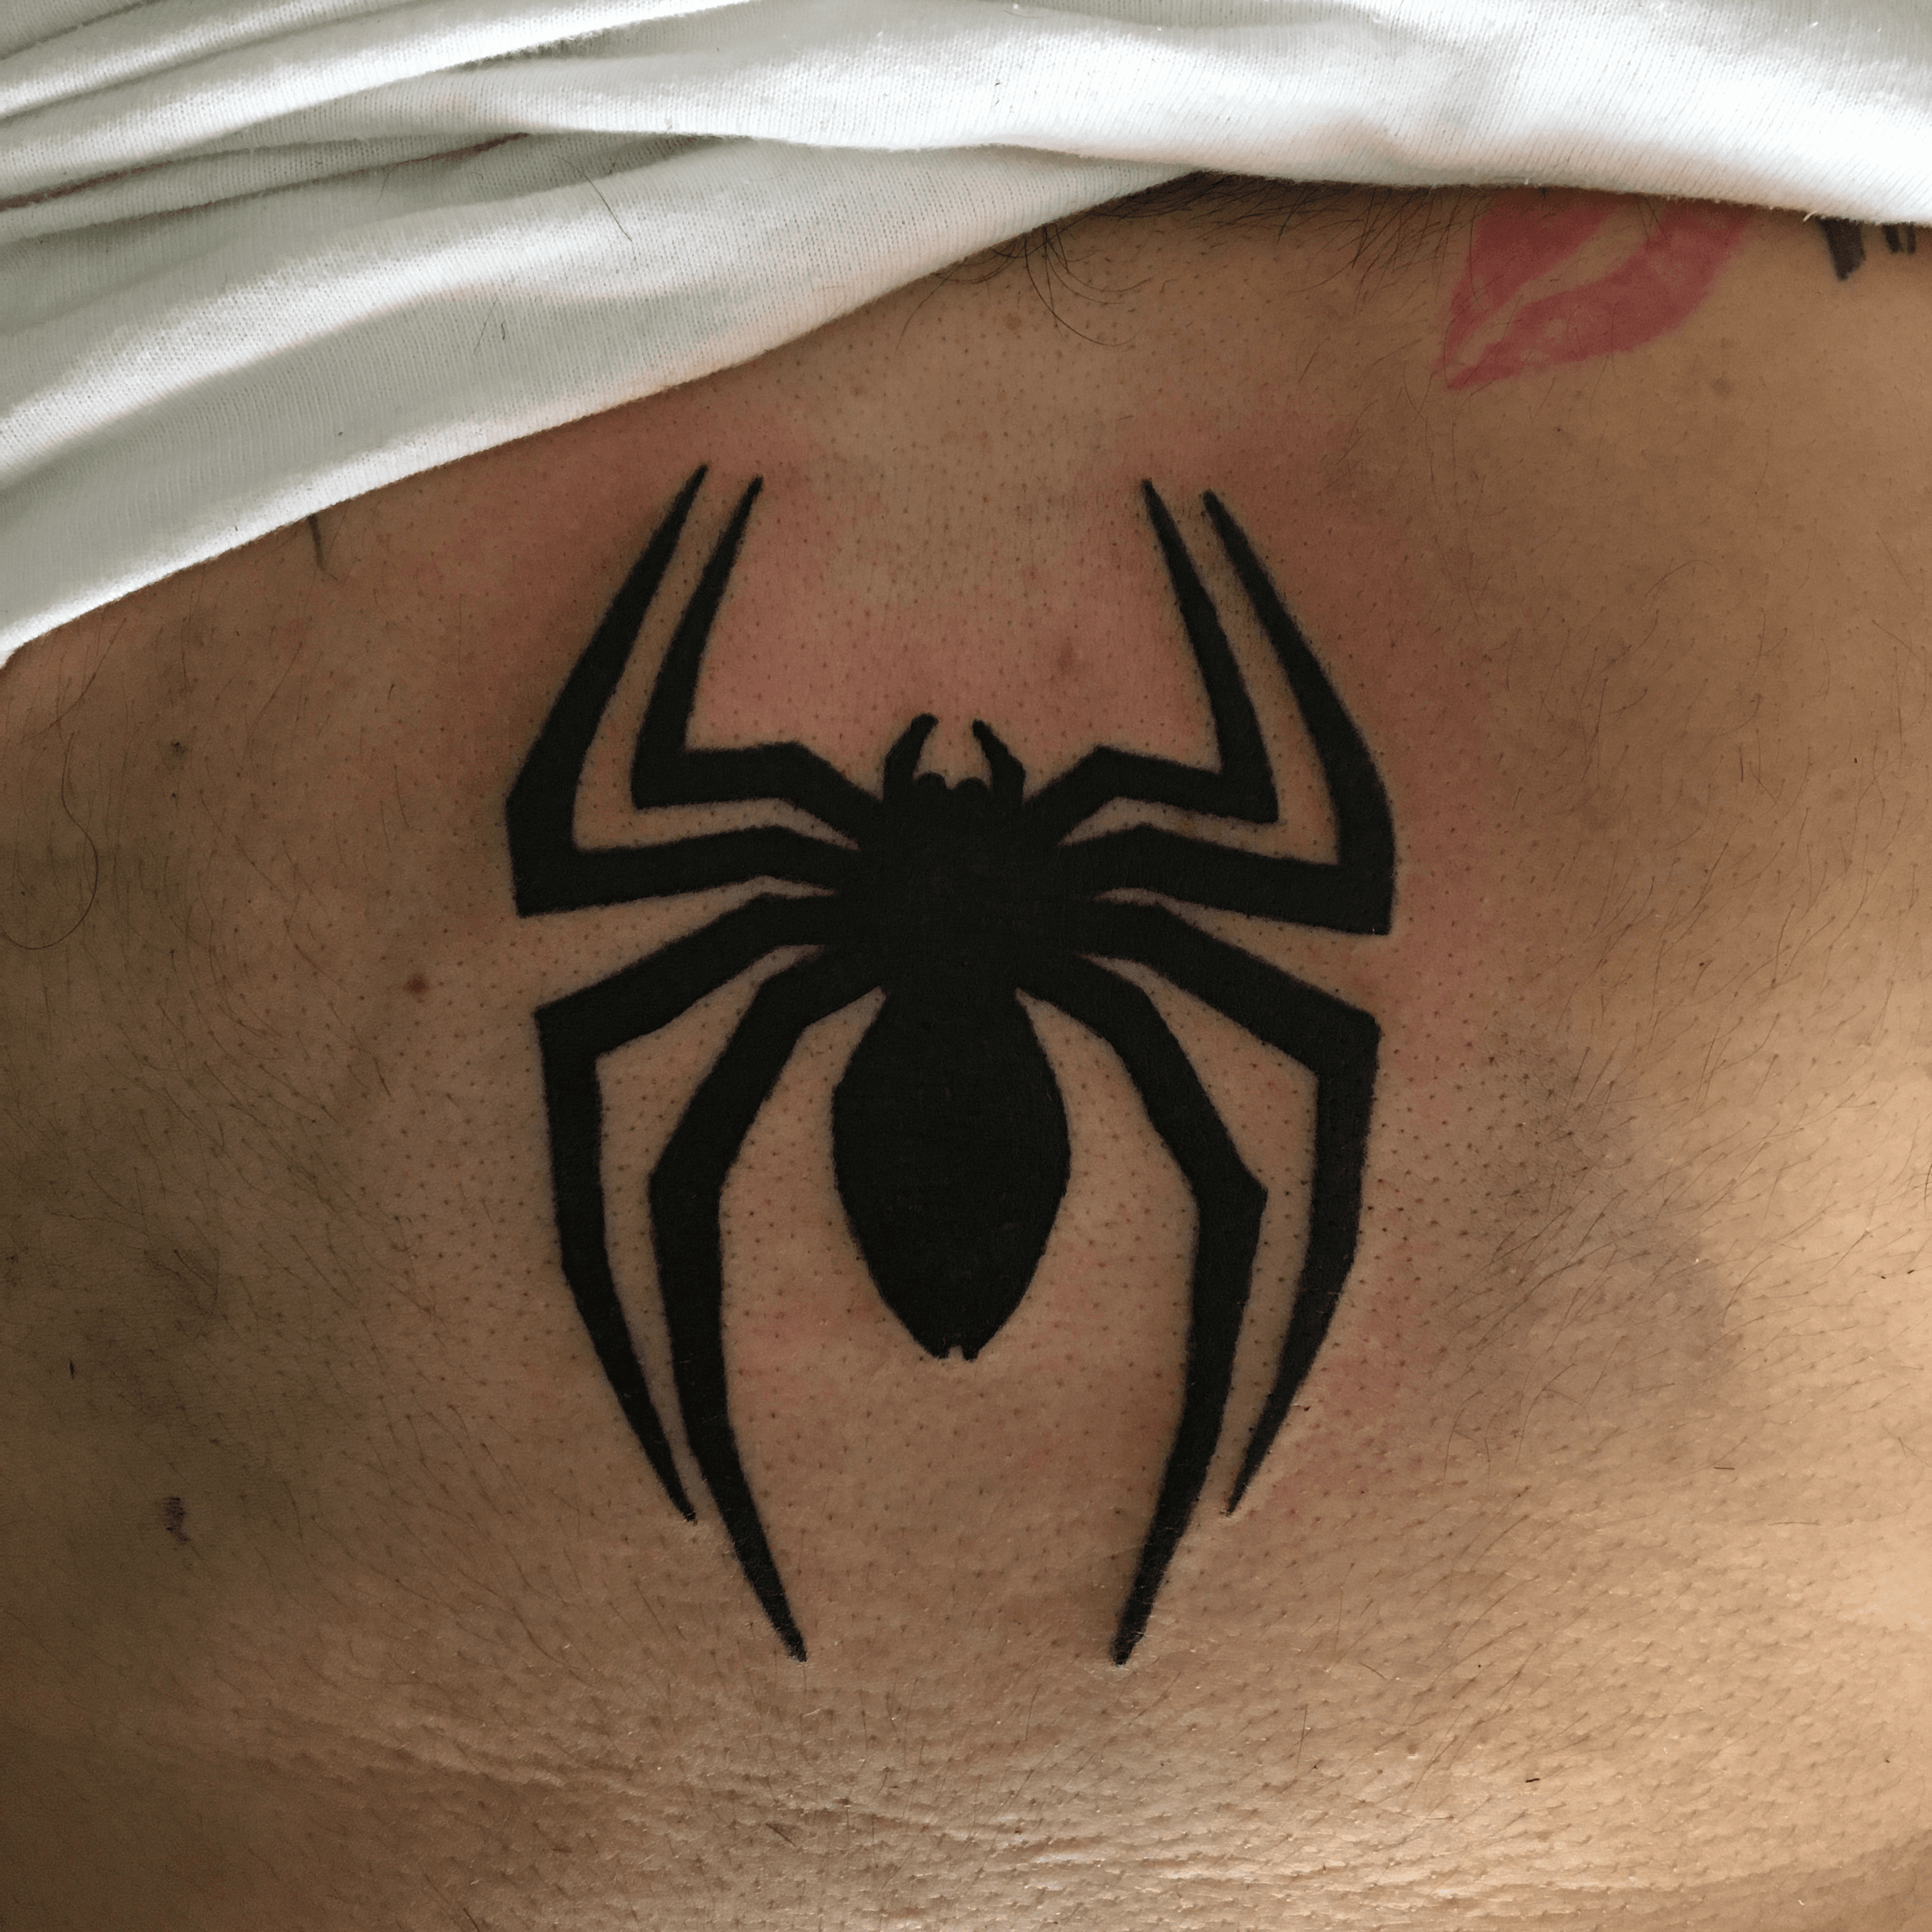 SpiderMan Tattoo  Spiderman tattoo Tattoos for guys Tattoo designs